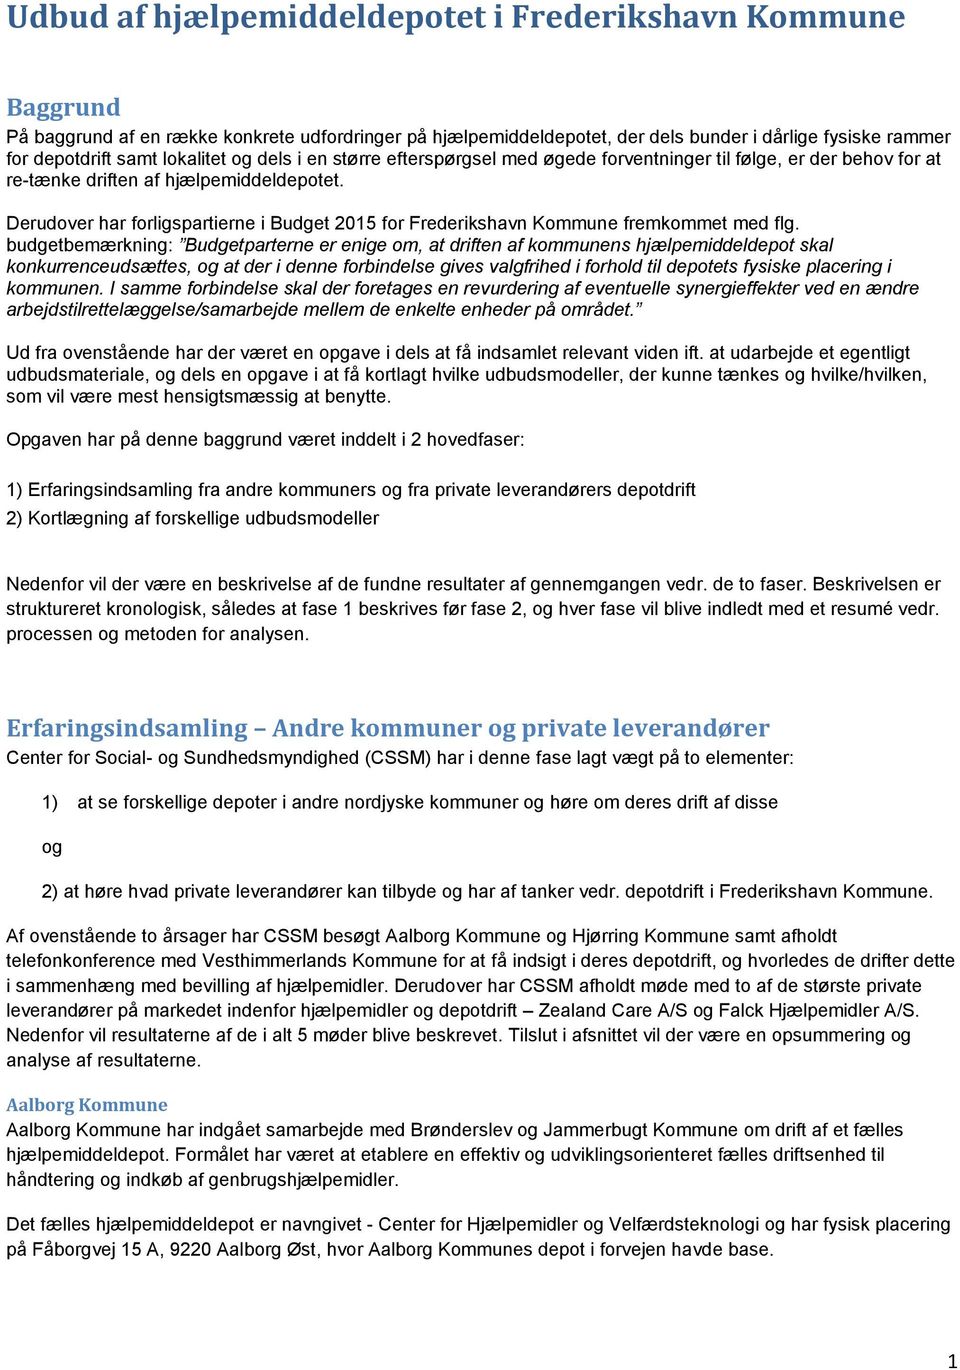 Derudover har forligspartierne i Budget 2015 for Frederikshavn Kommune fremkommet med flg.